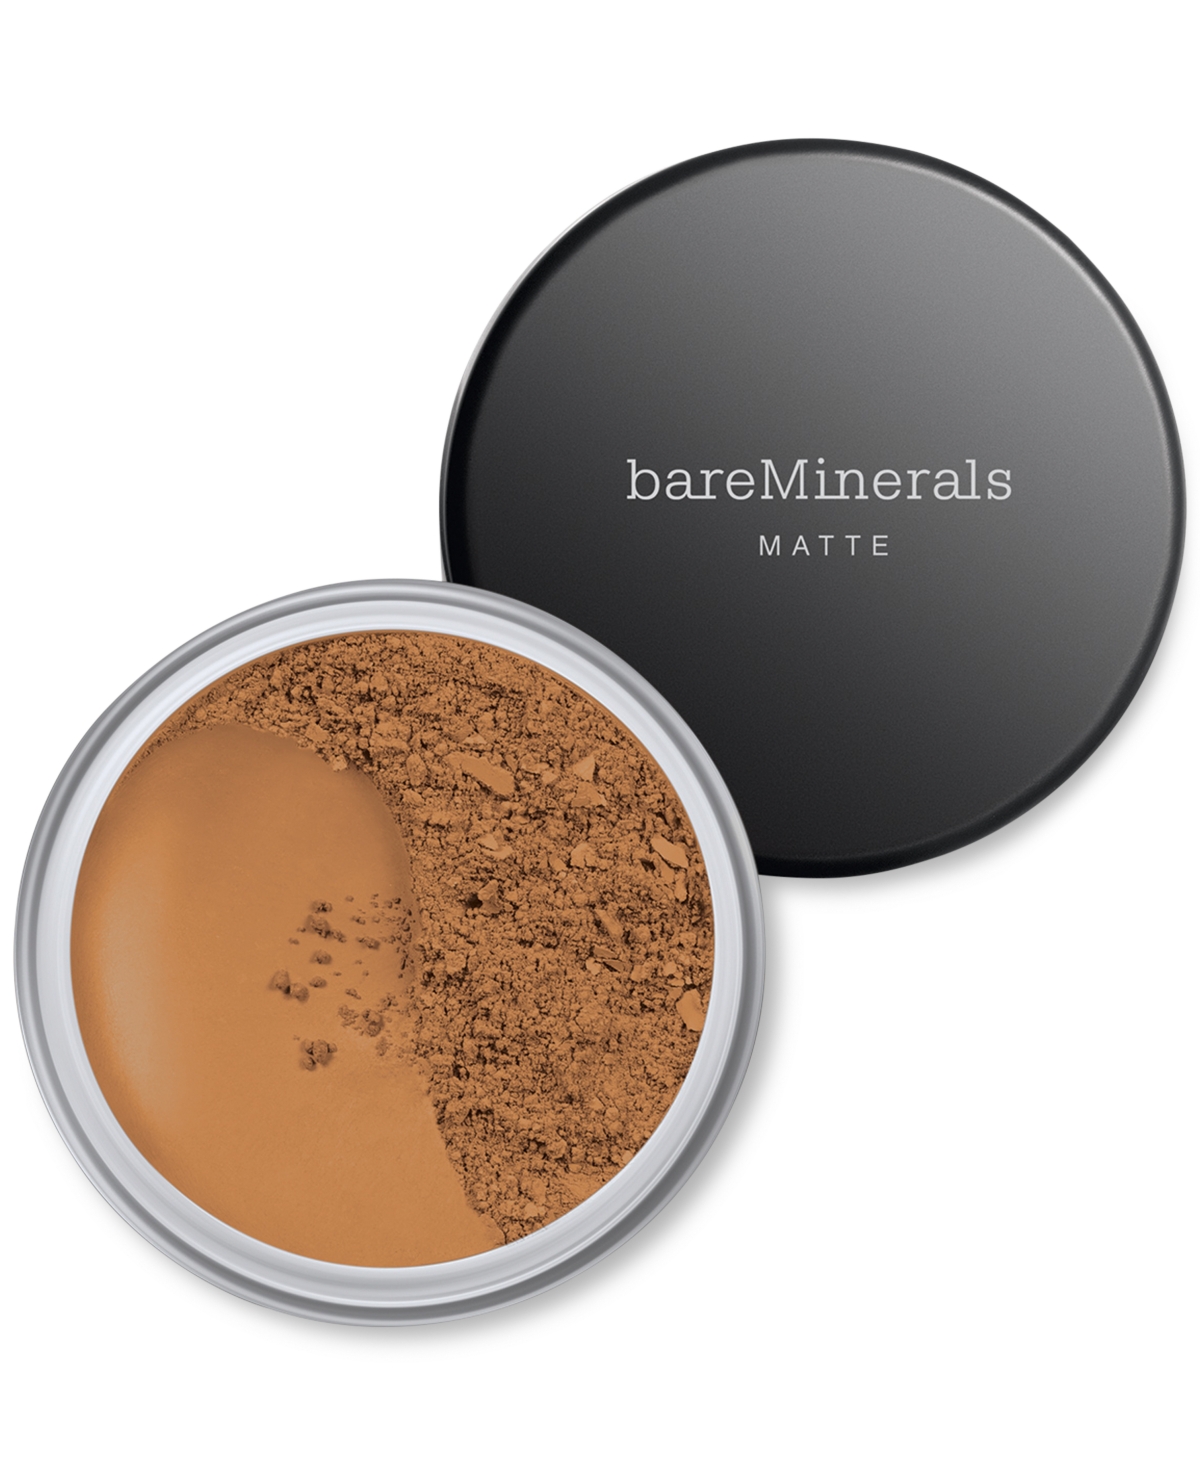 Bareminerals Matte Loose Powder Foundation Spf 15 In Warm Dark  - For Dark Skin With Warm Und